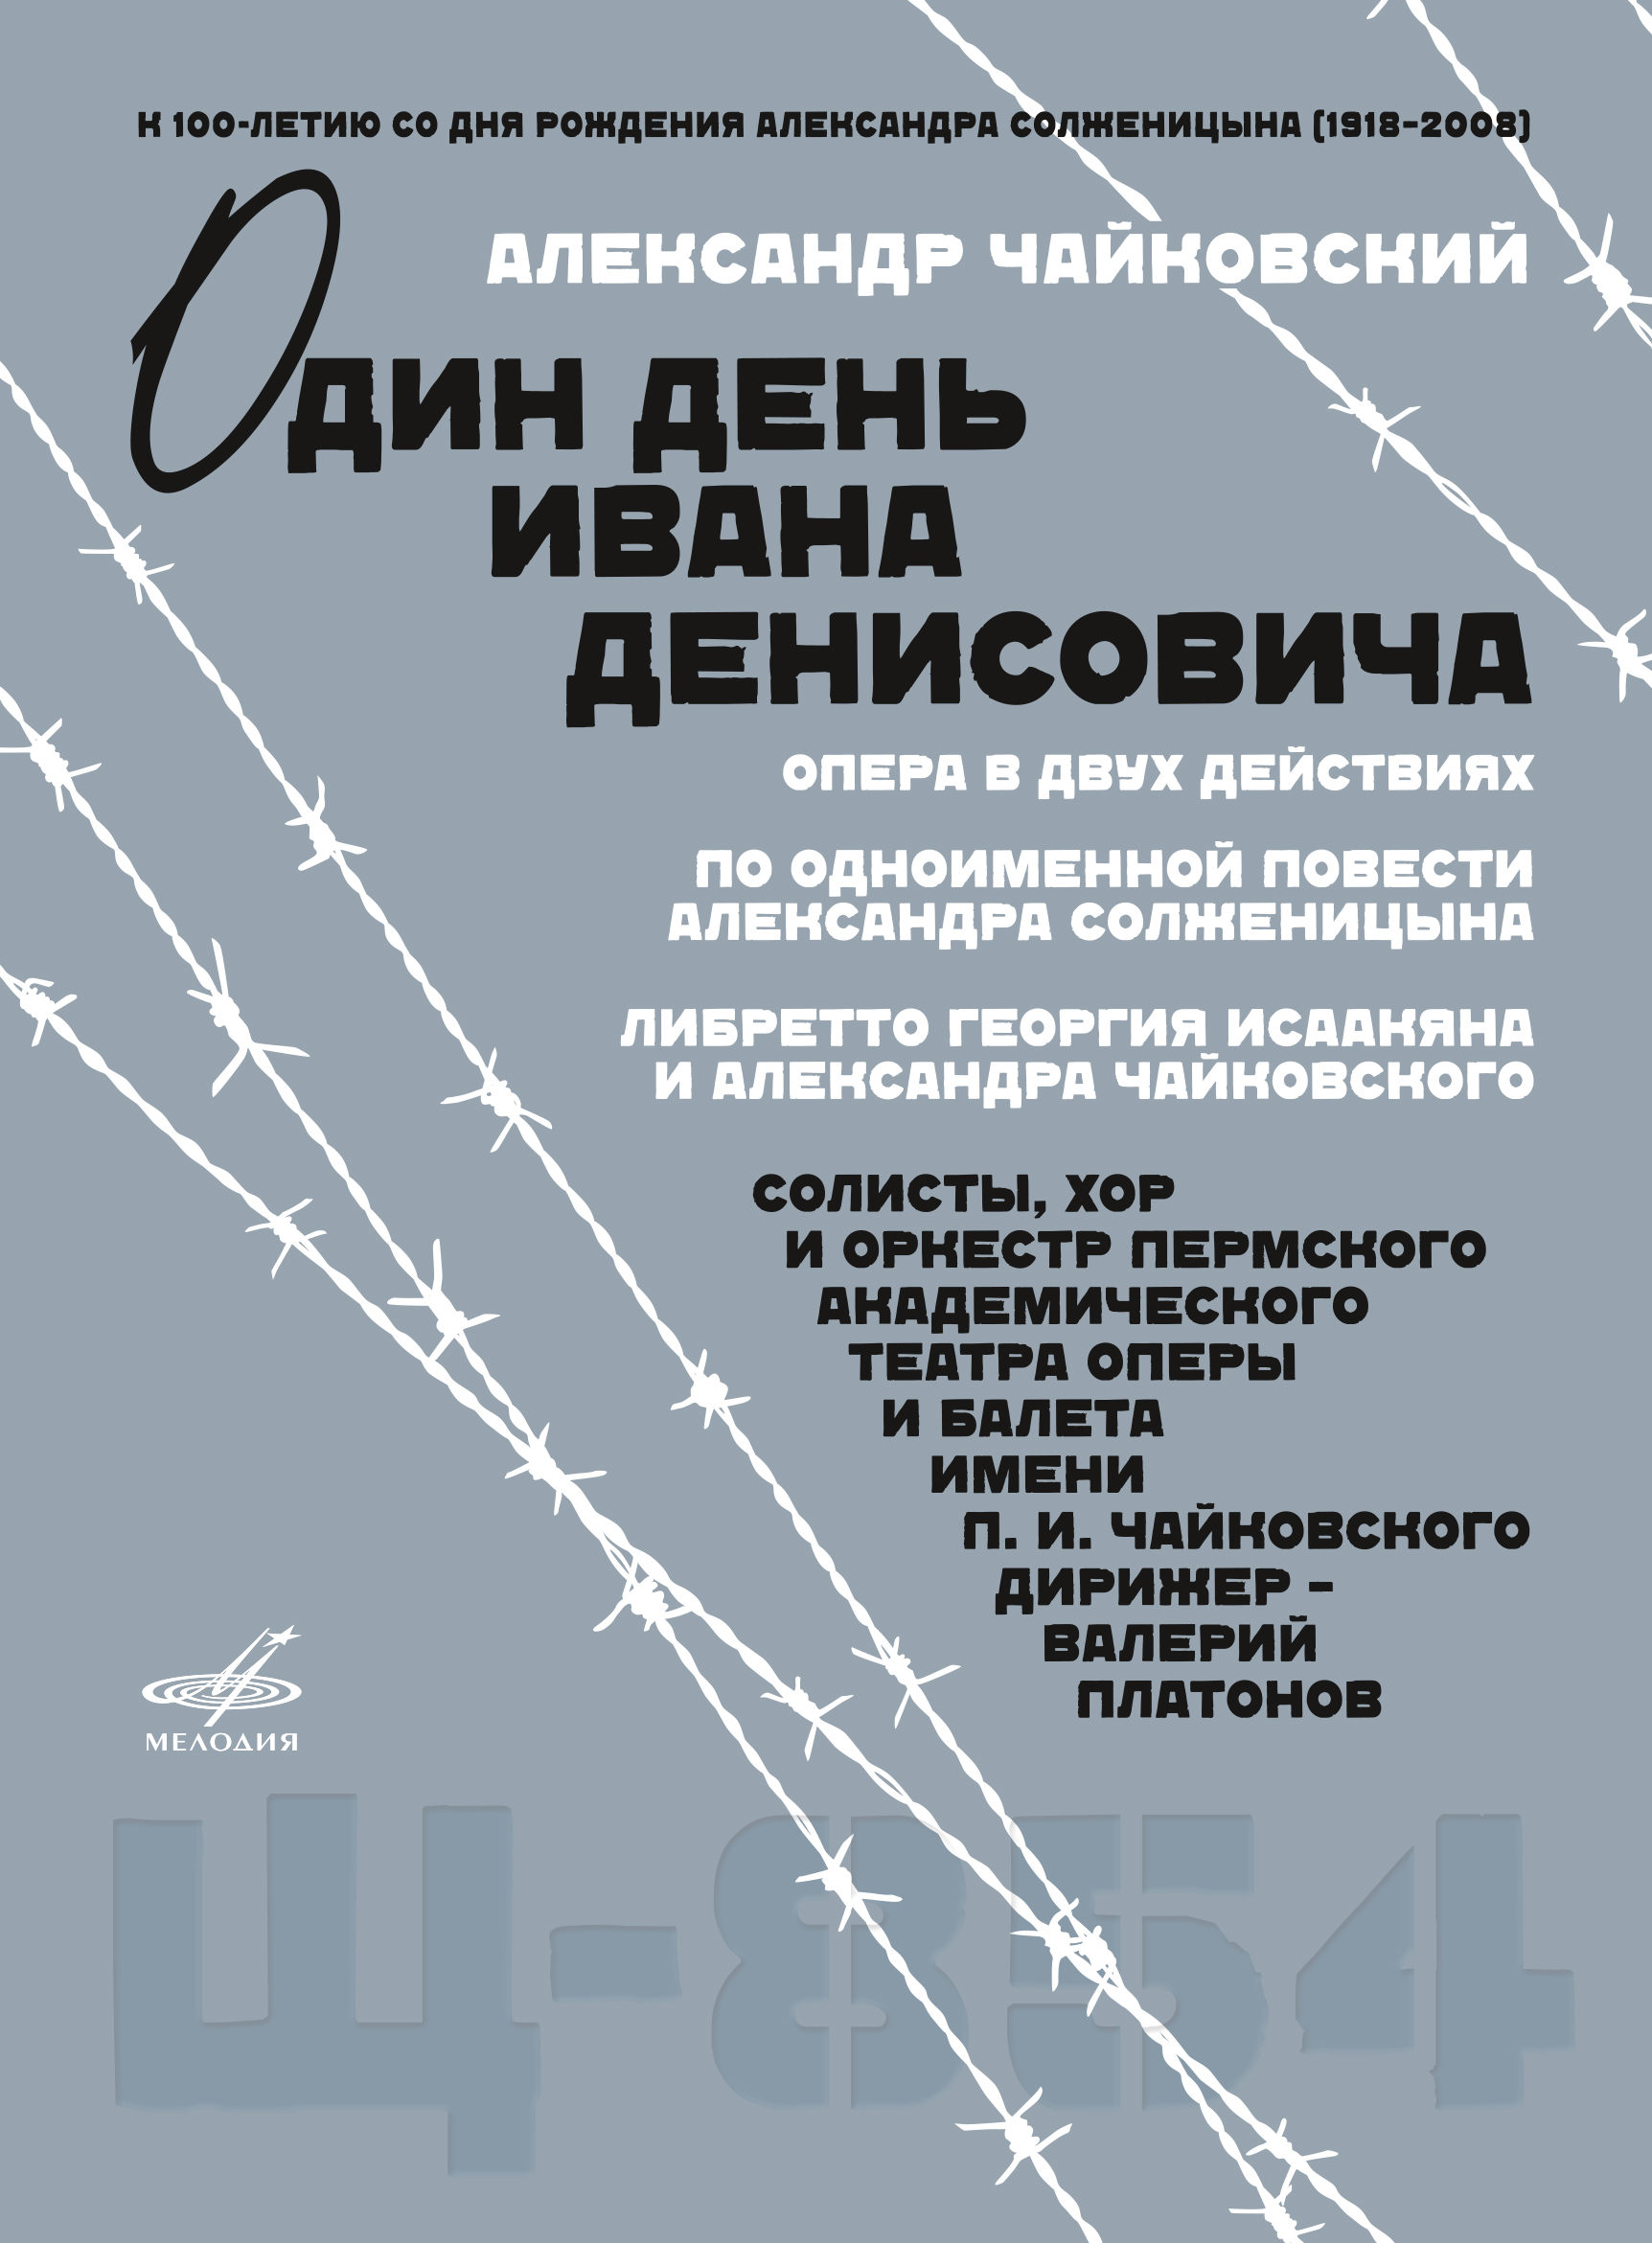 НФПП издал оперу Александра Чайковского «Один день Ивана Денисовича» на DVD